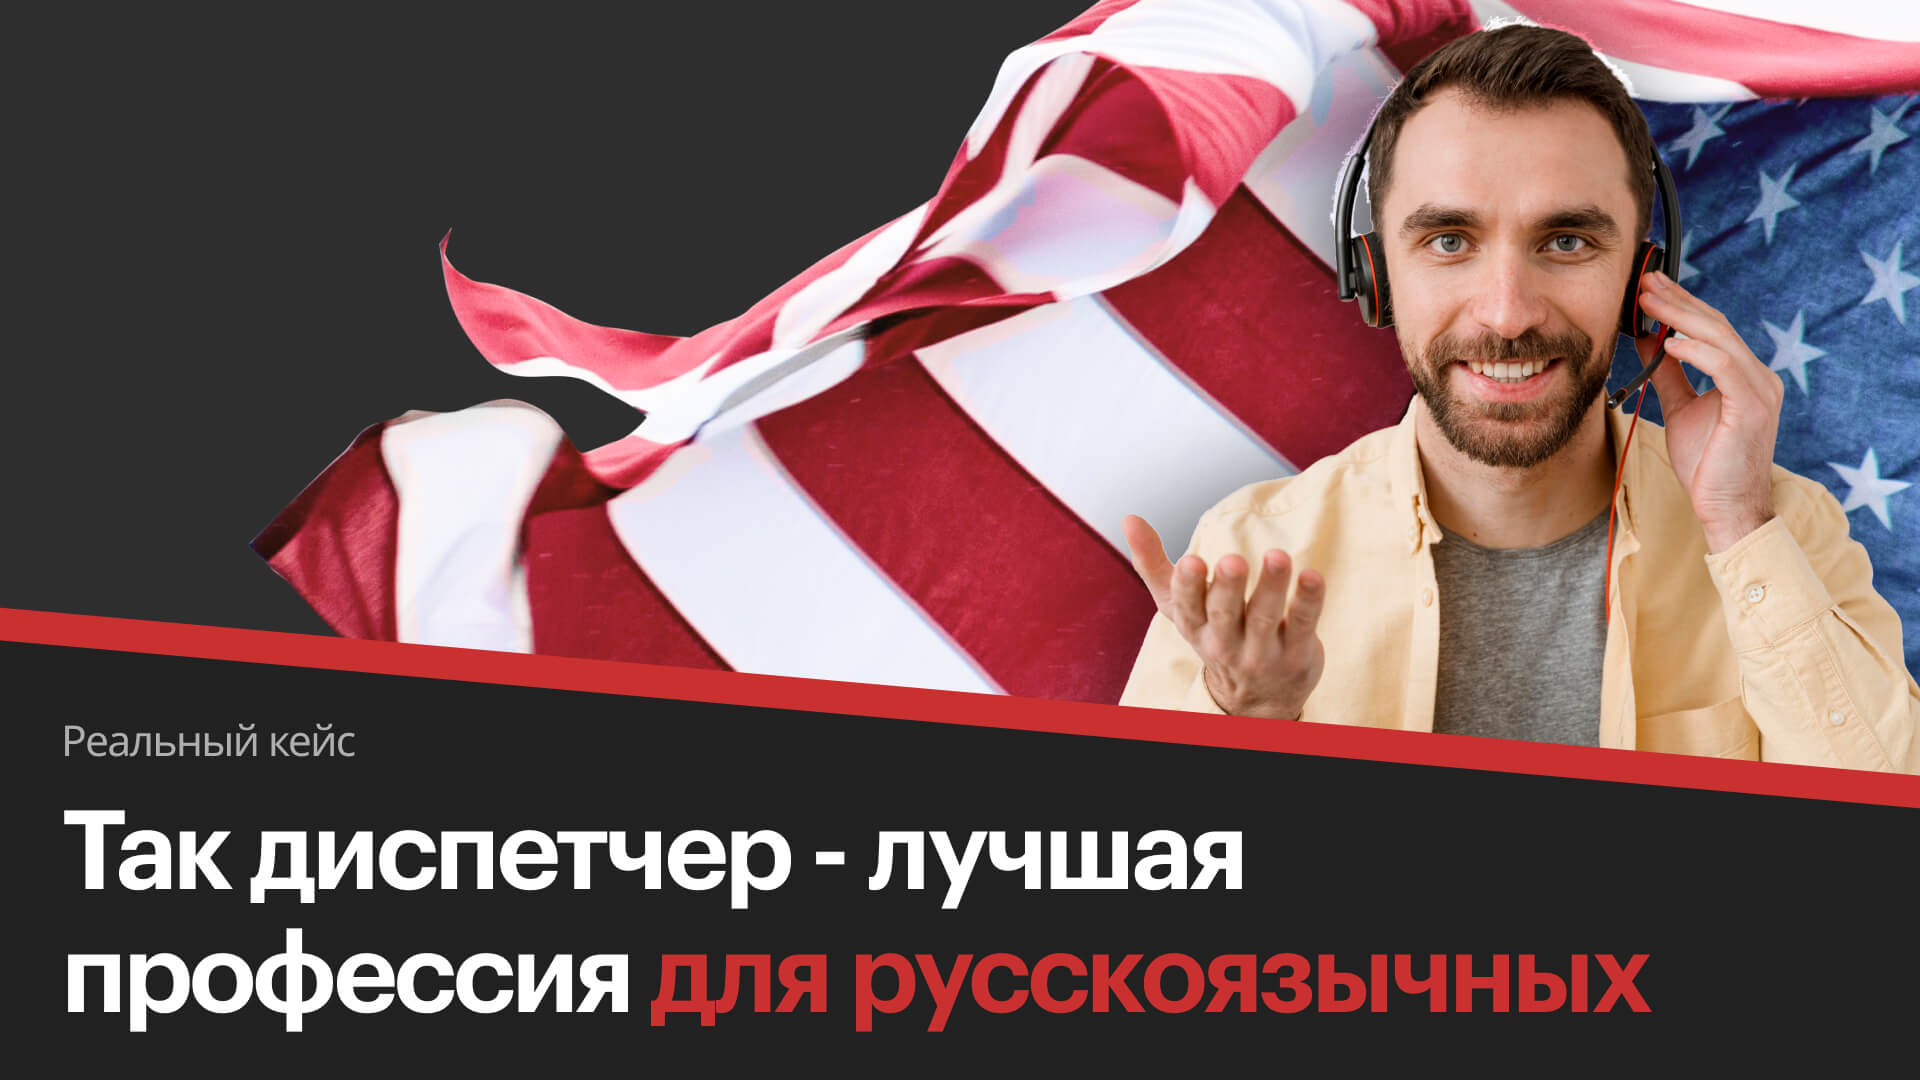 Лучшая профессия для русскоязычных в США